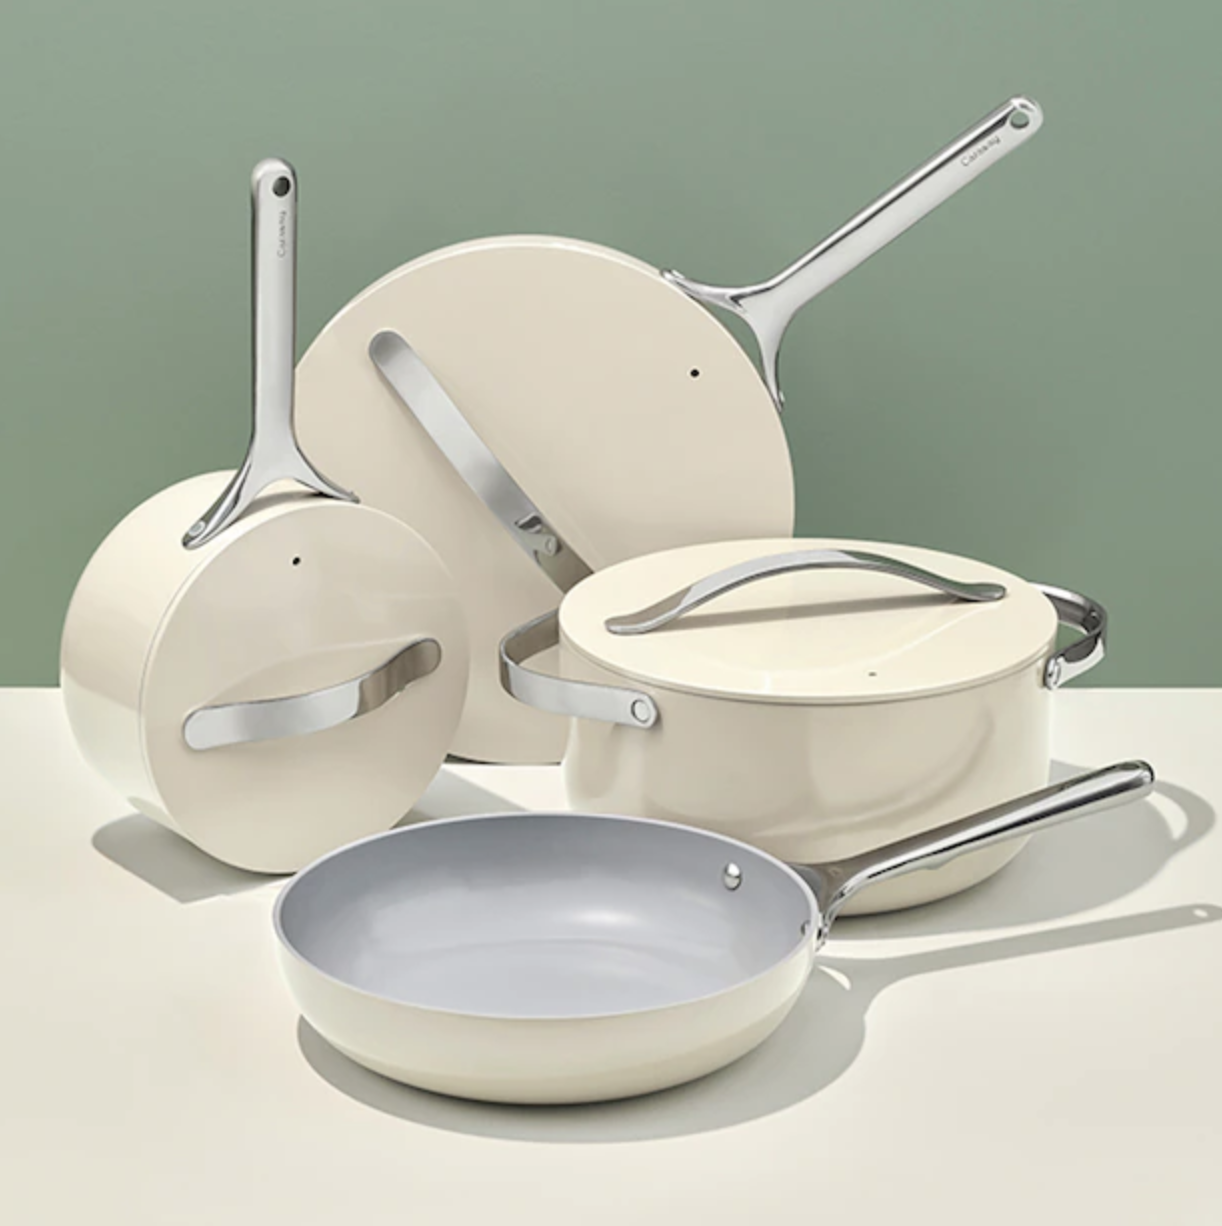 a four piece ceramic cookware set